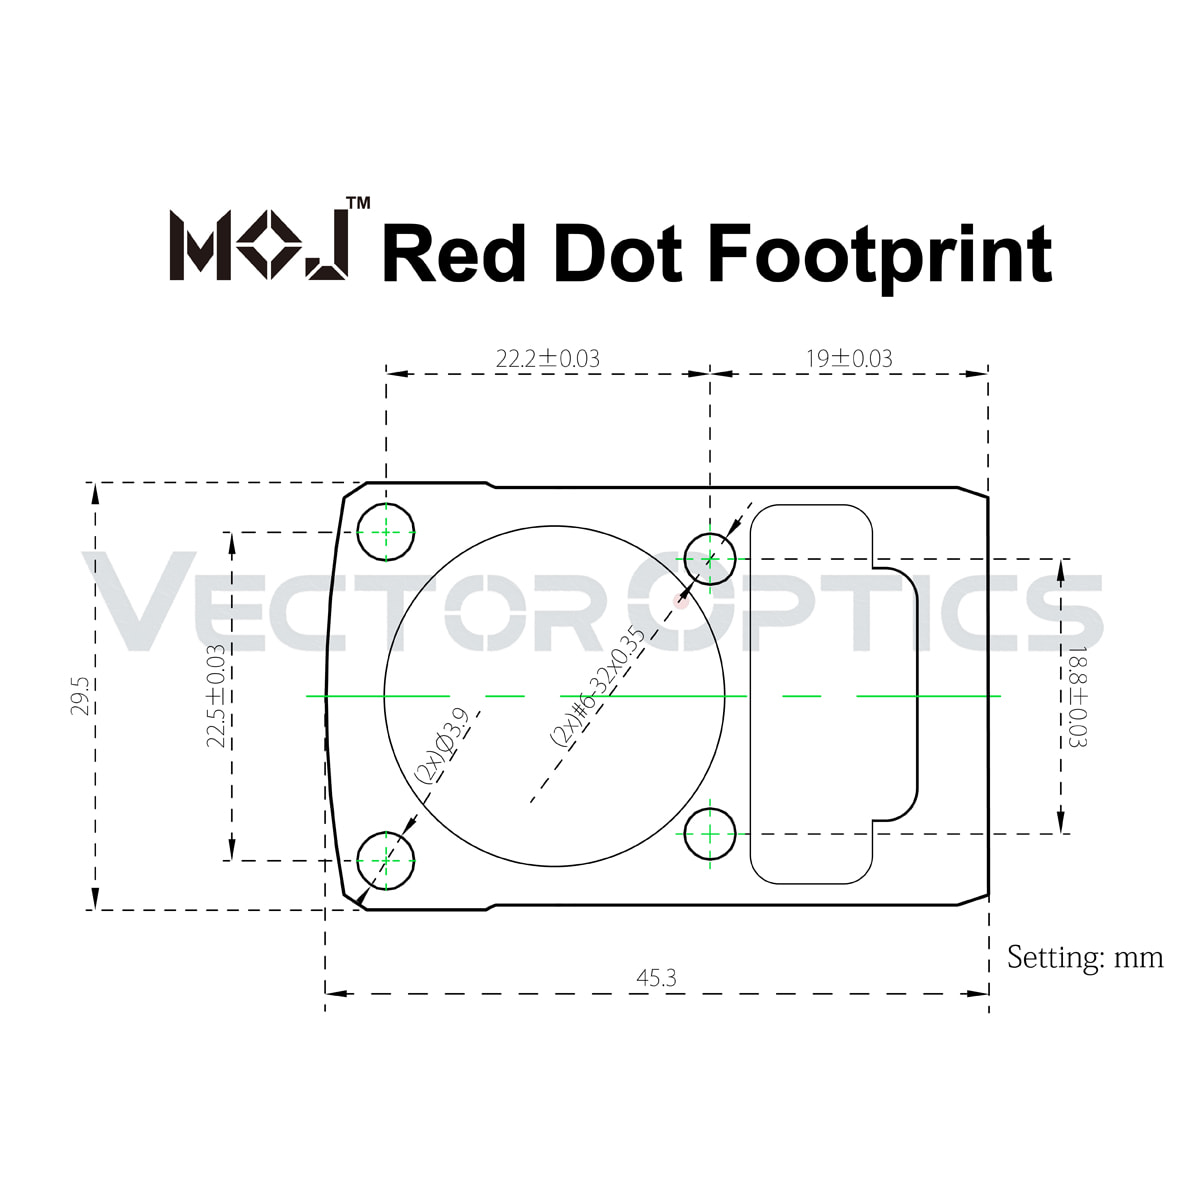 VO MOJ Footprint Acom Diagram - 副本